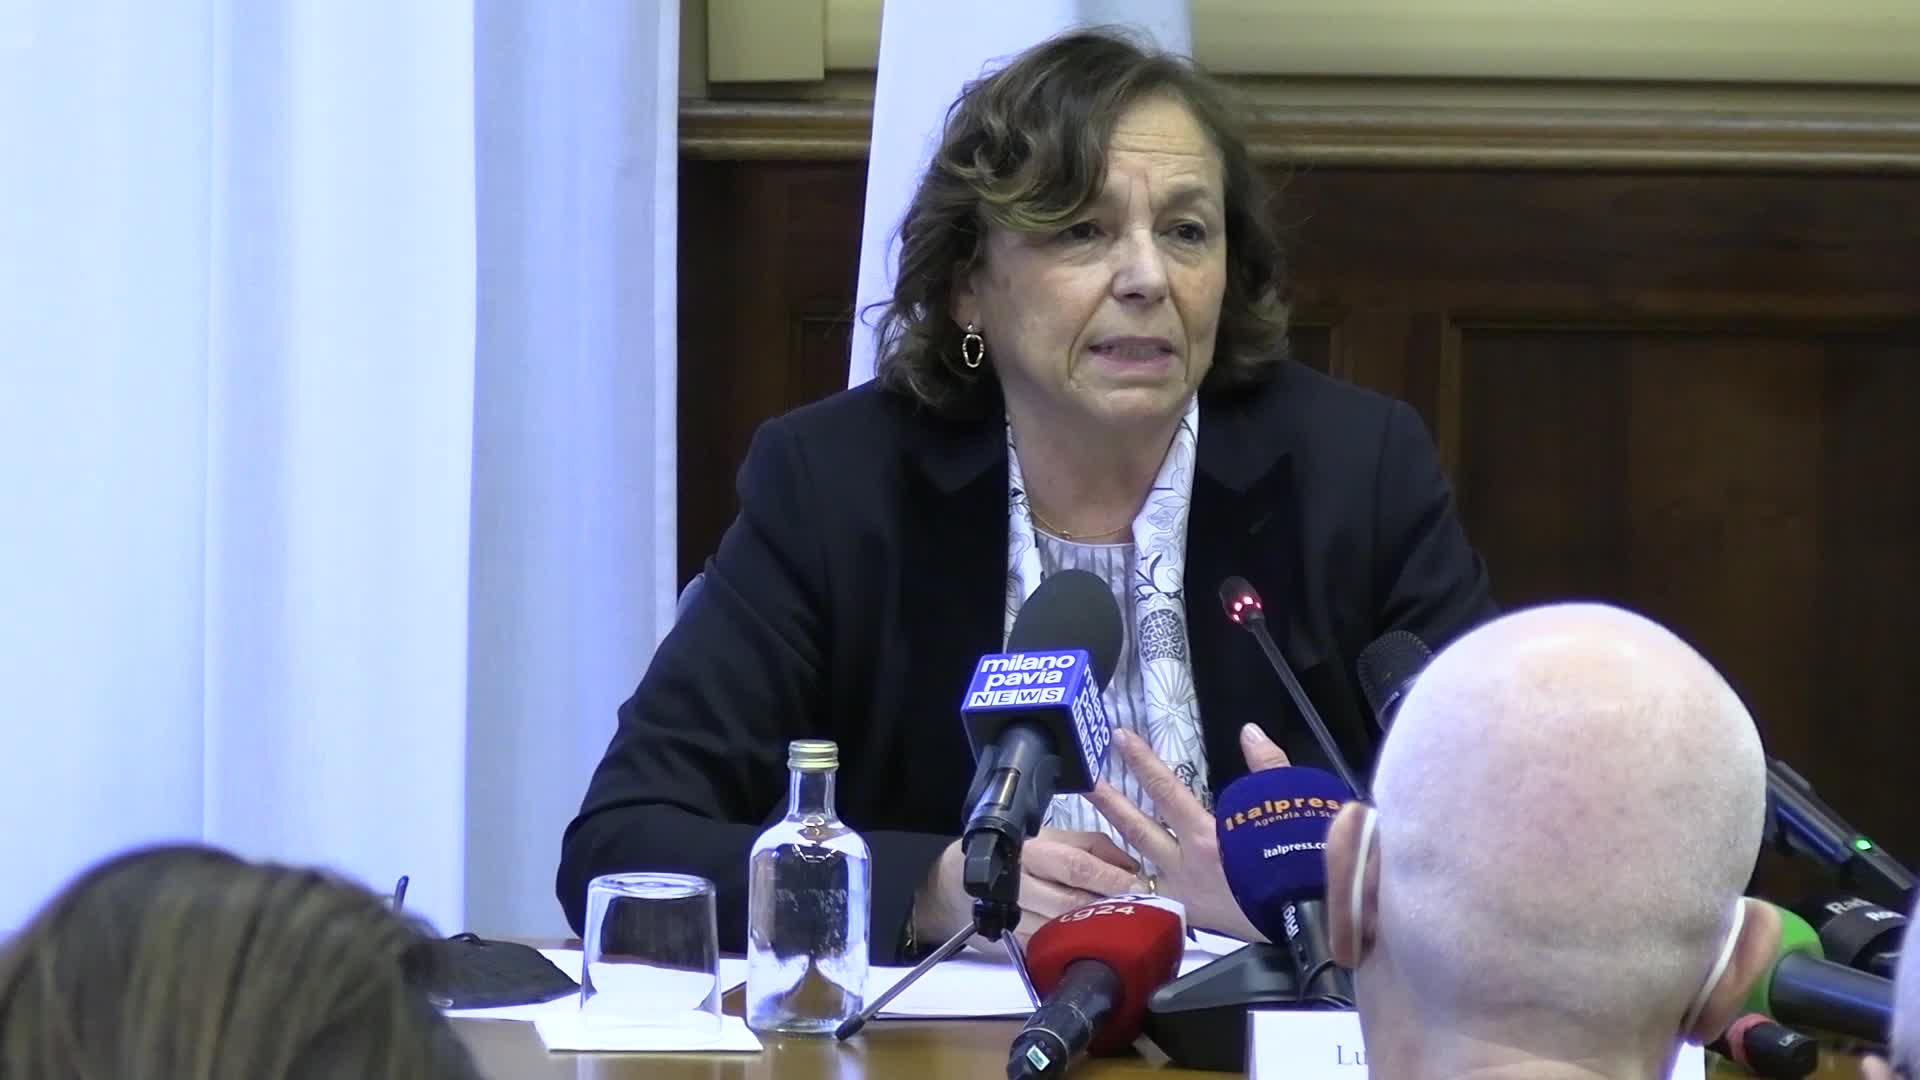 La ministra Lamorgese dice "no" ai codici identificativi sui caschi degli agenti